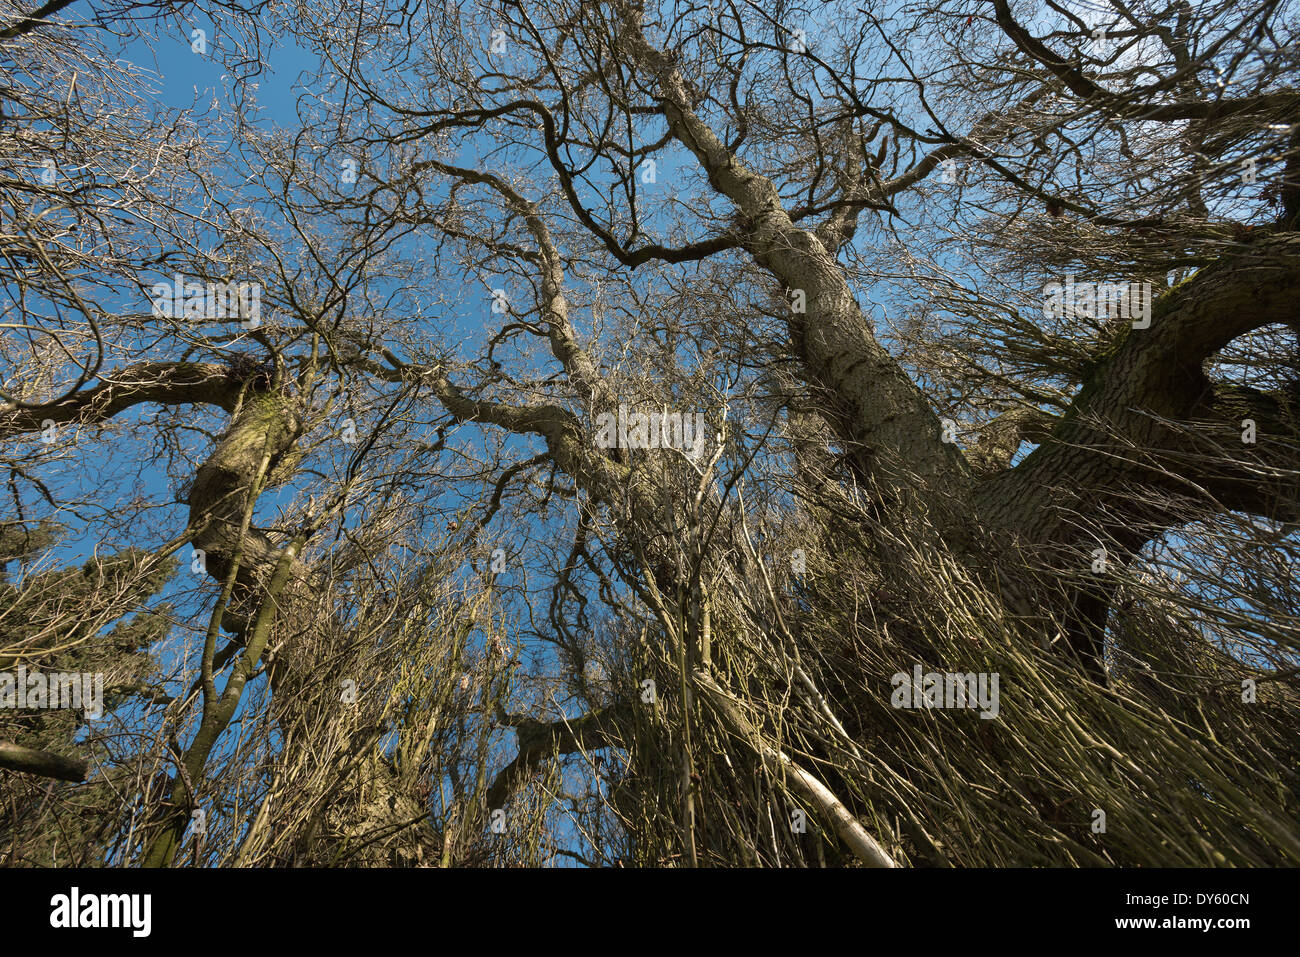 Vieille mature énorme arbre Peuplier noir sauvage dépourvue de feuilles avec des arrangements intéressants de l'écorce des branches et brindilles de lignes Banque D'Images